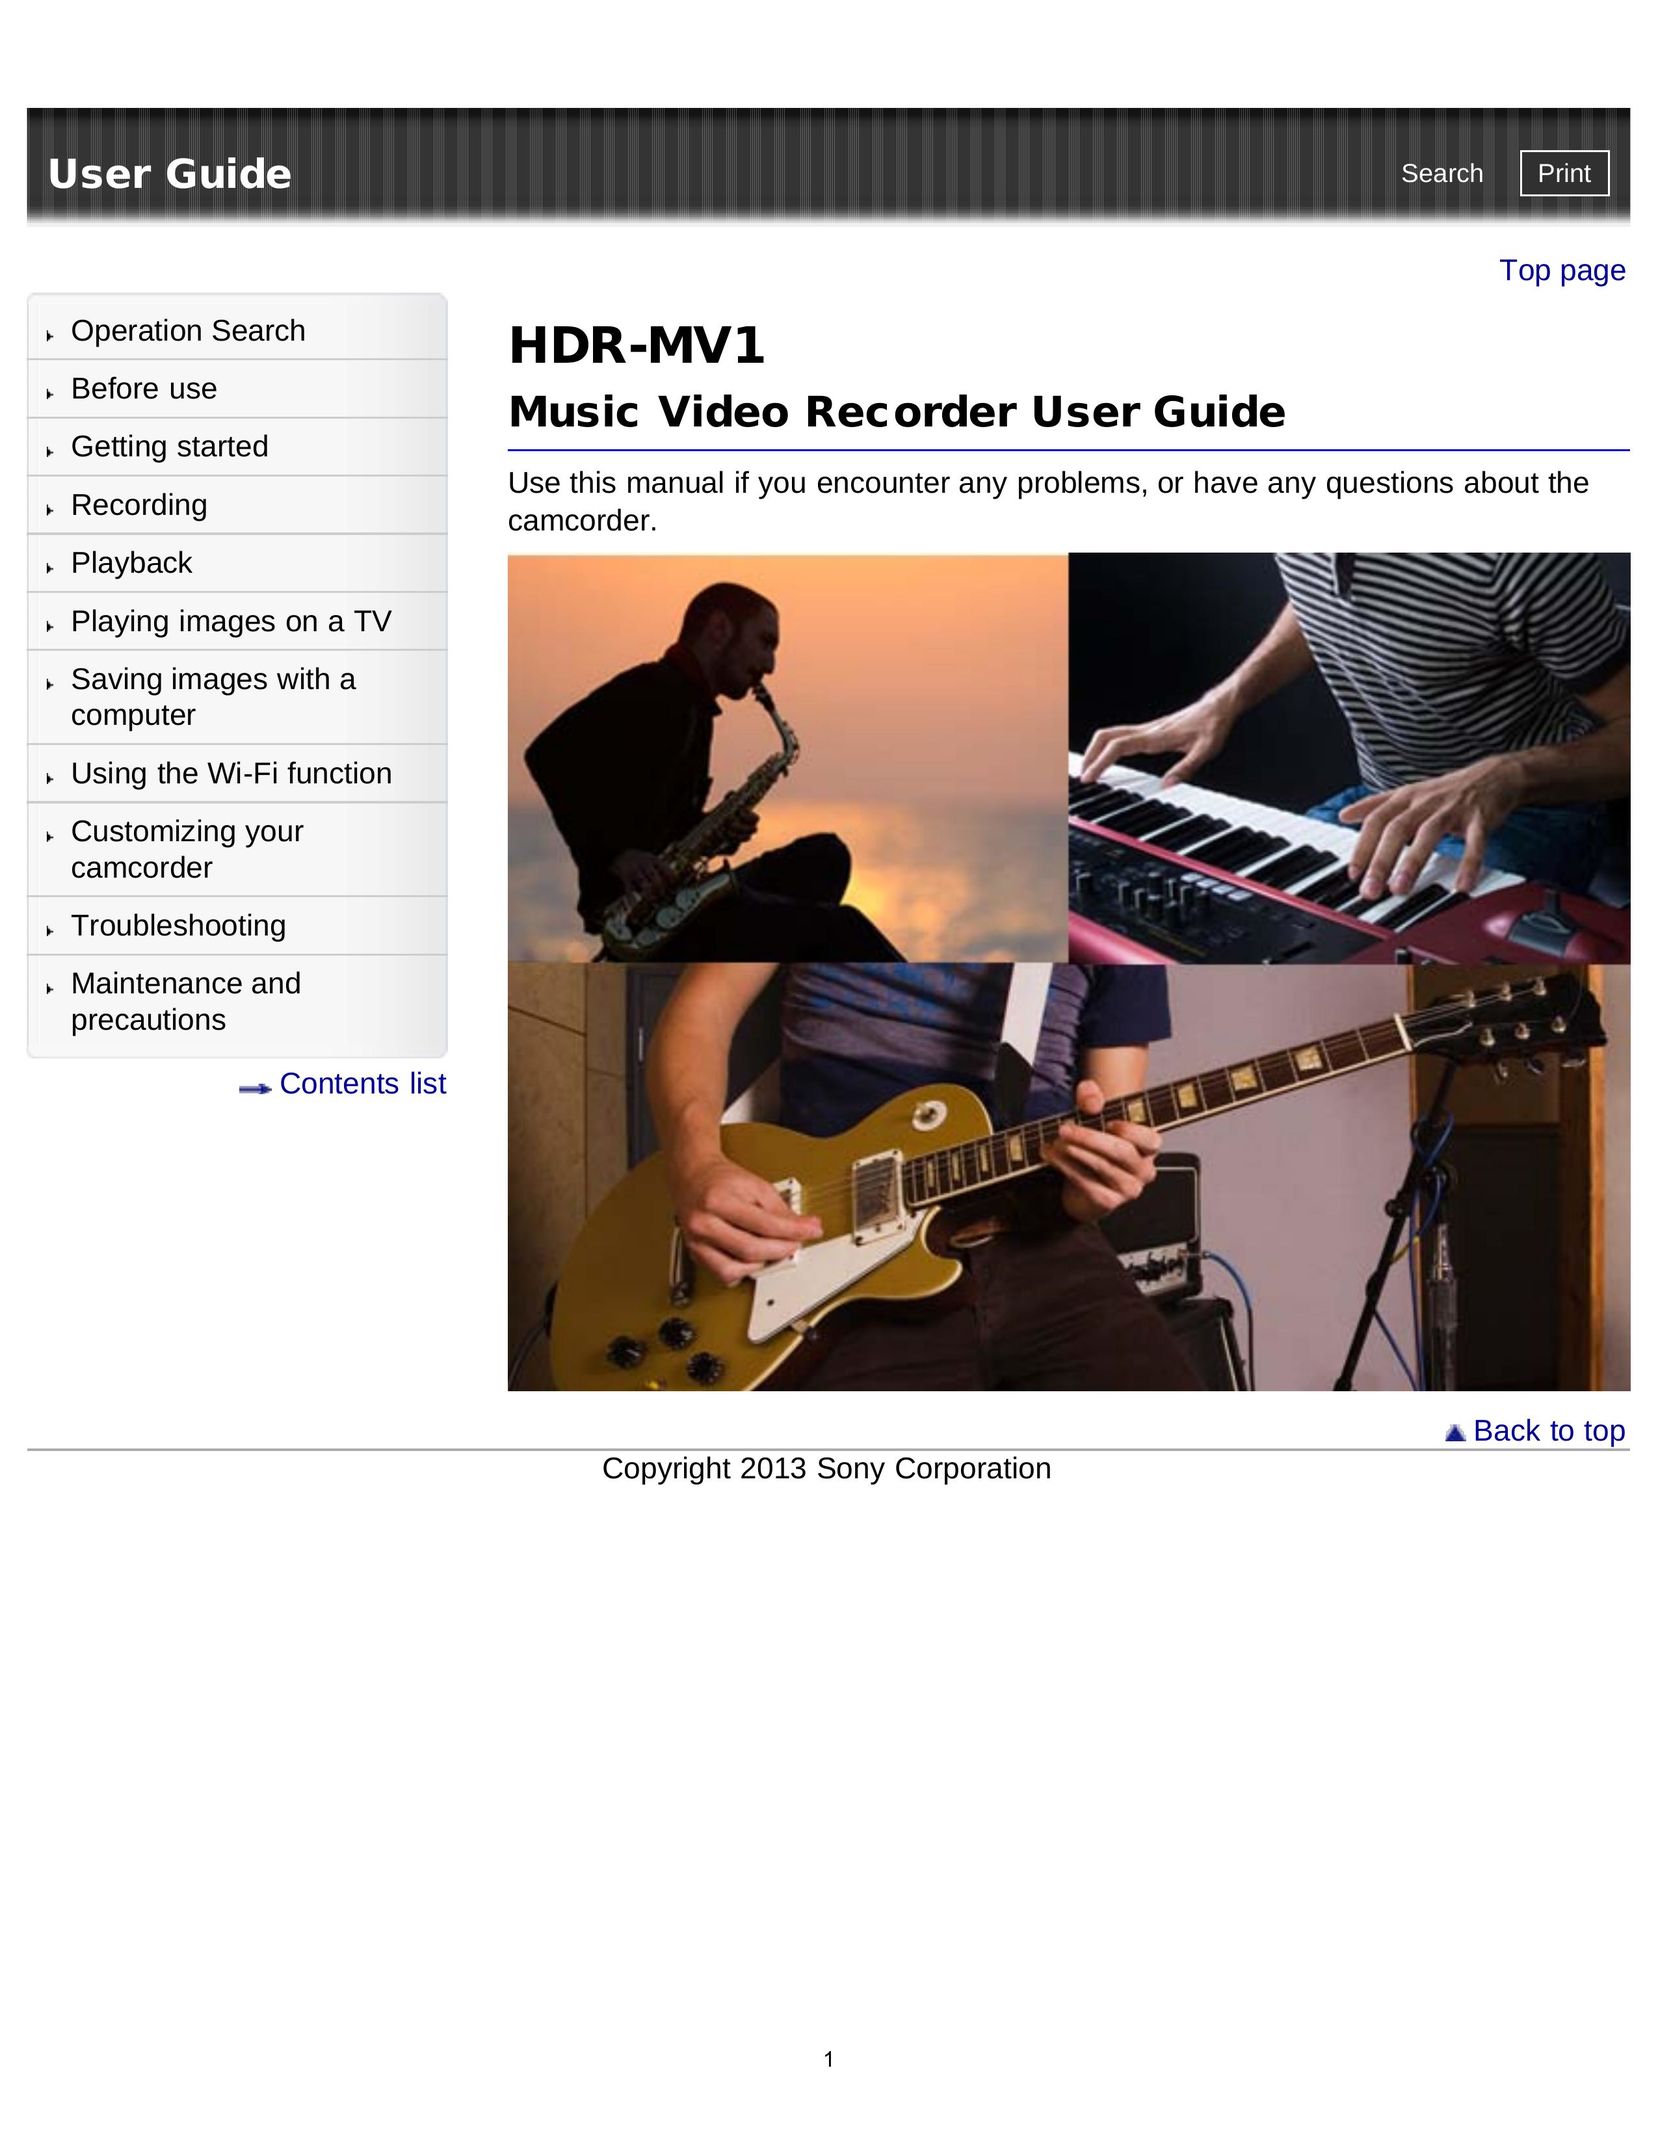 Sony HDR-MV1 DVR User Manual